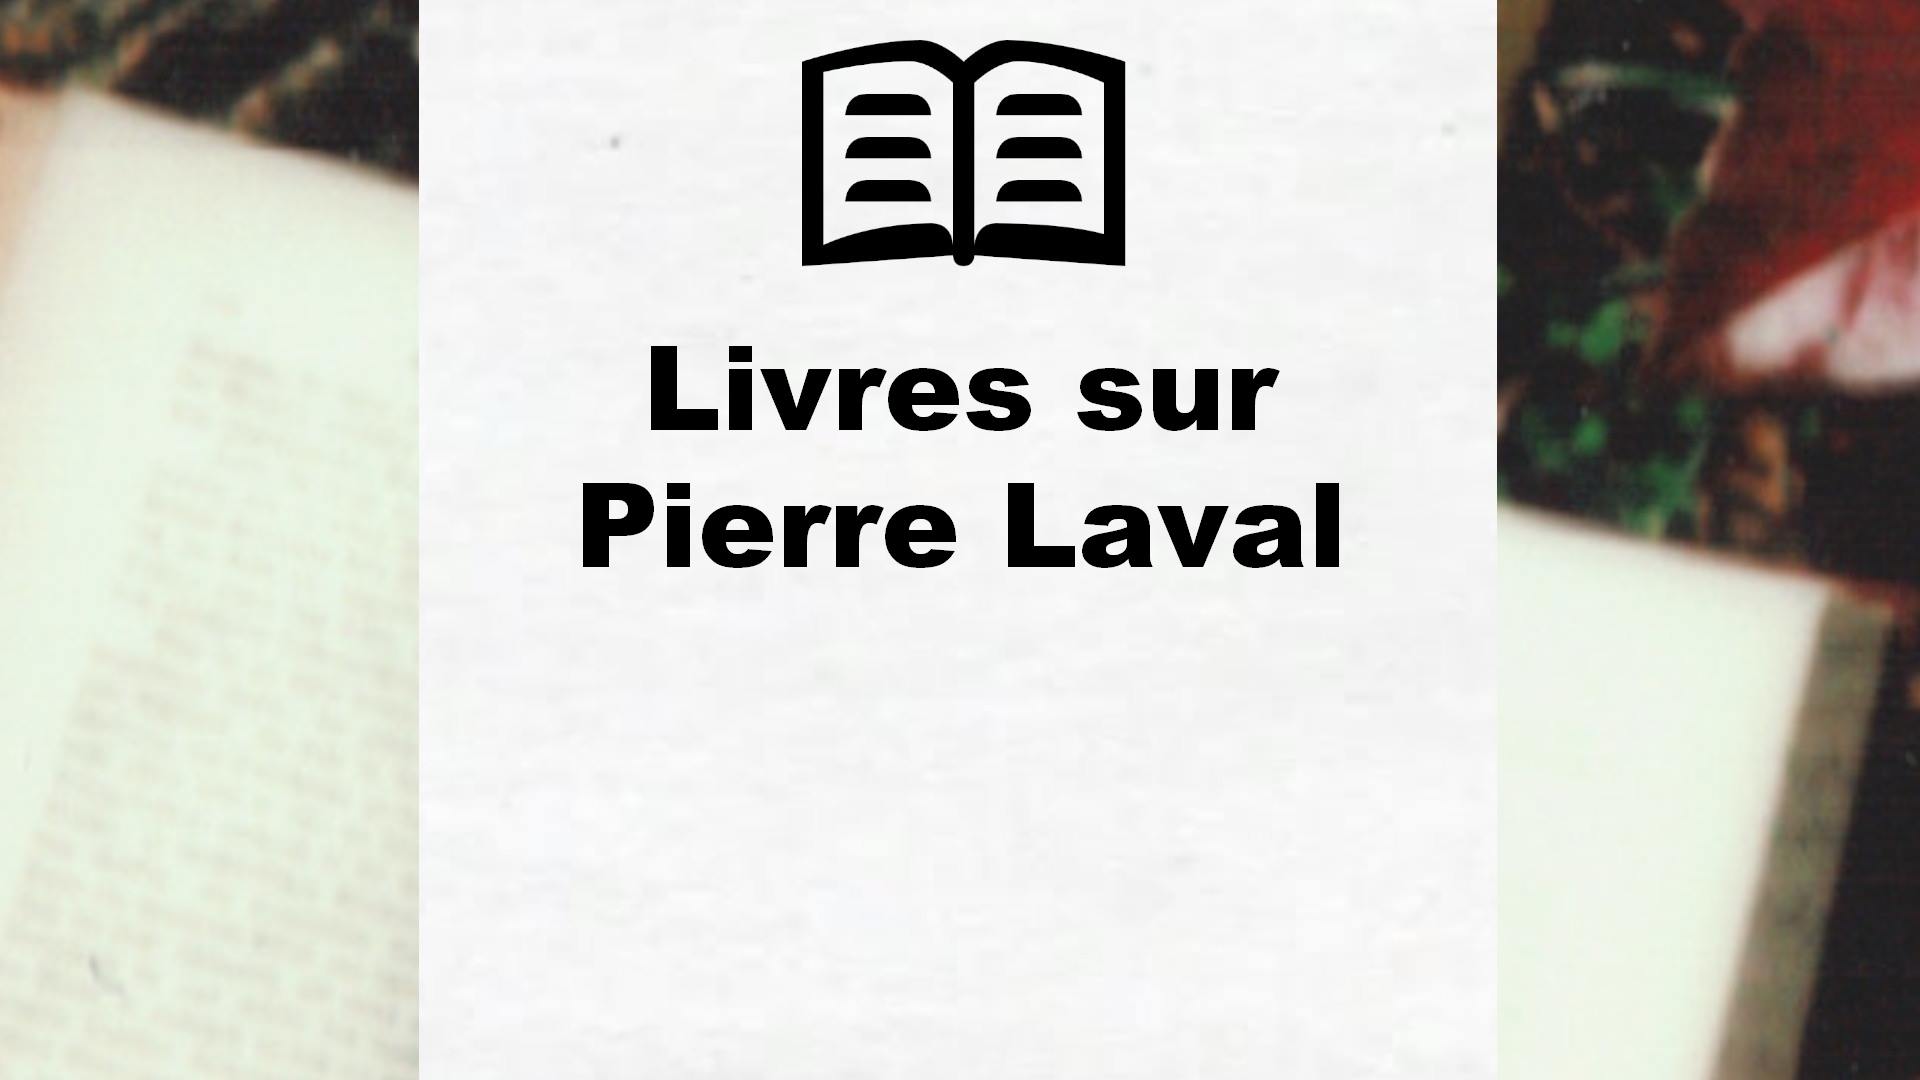 Livres sur Pierre Laval